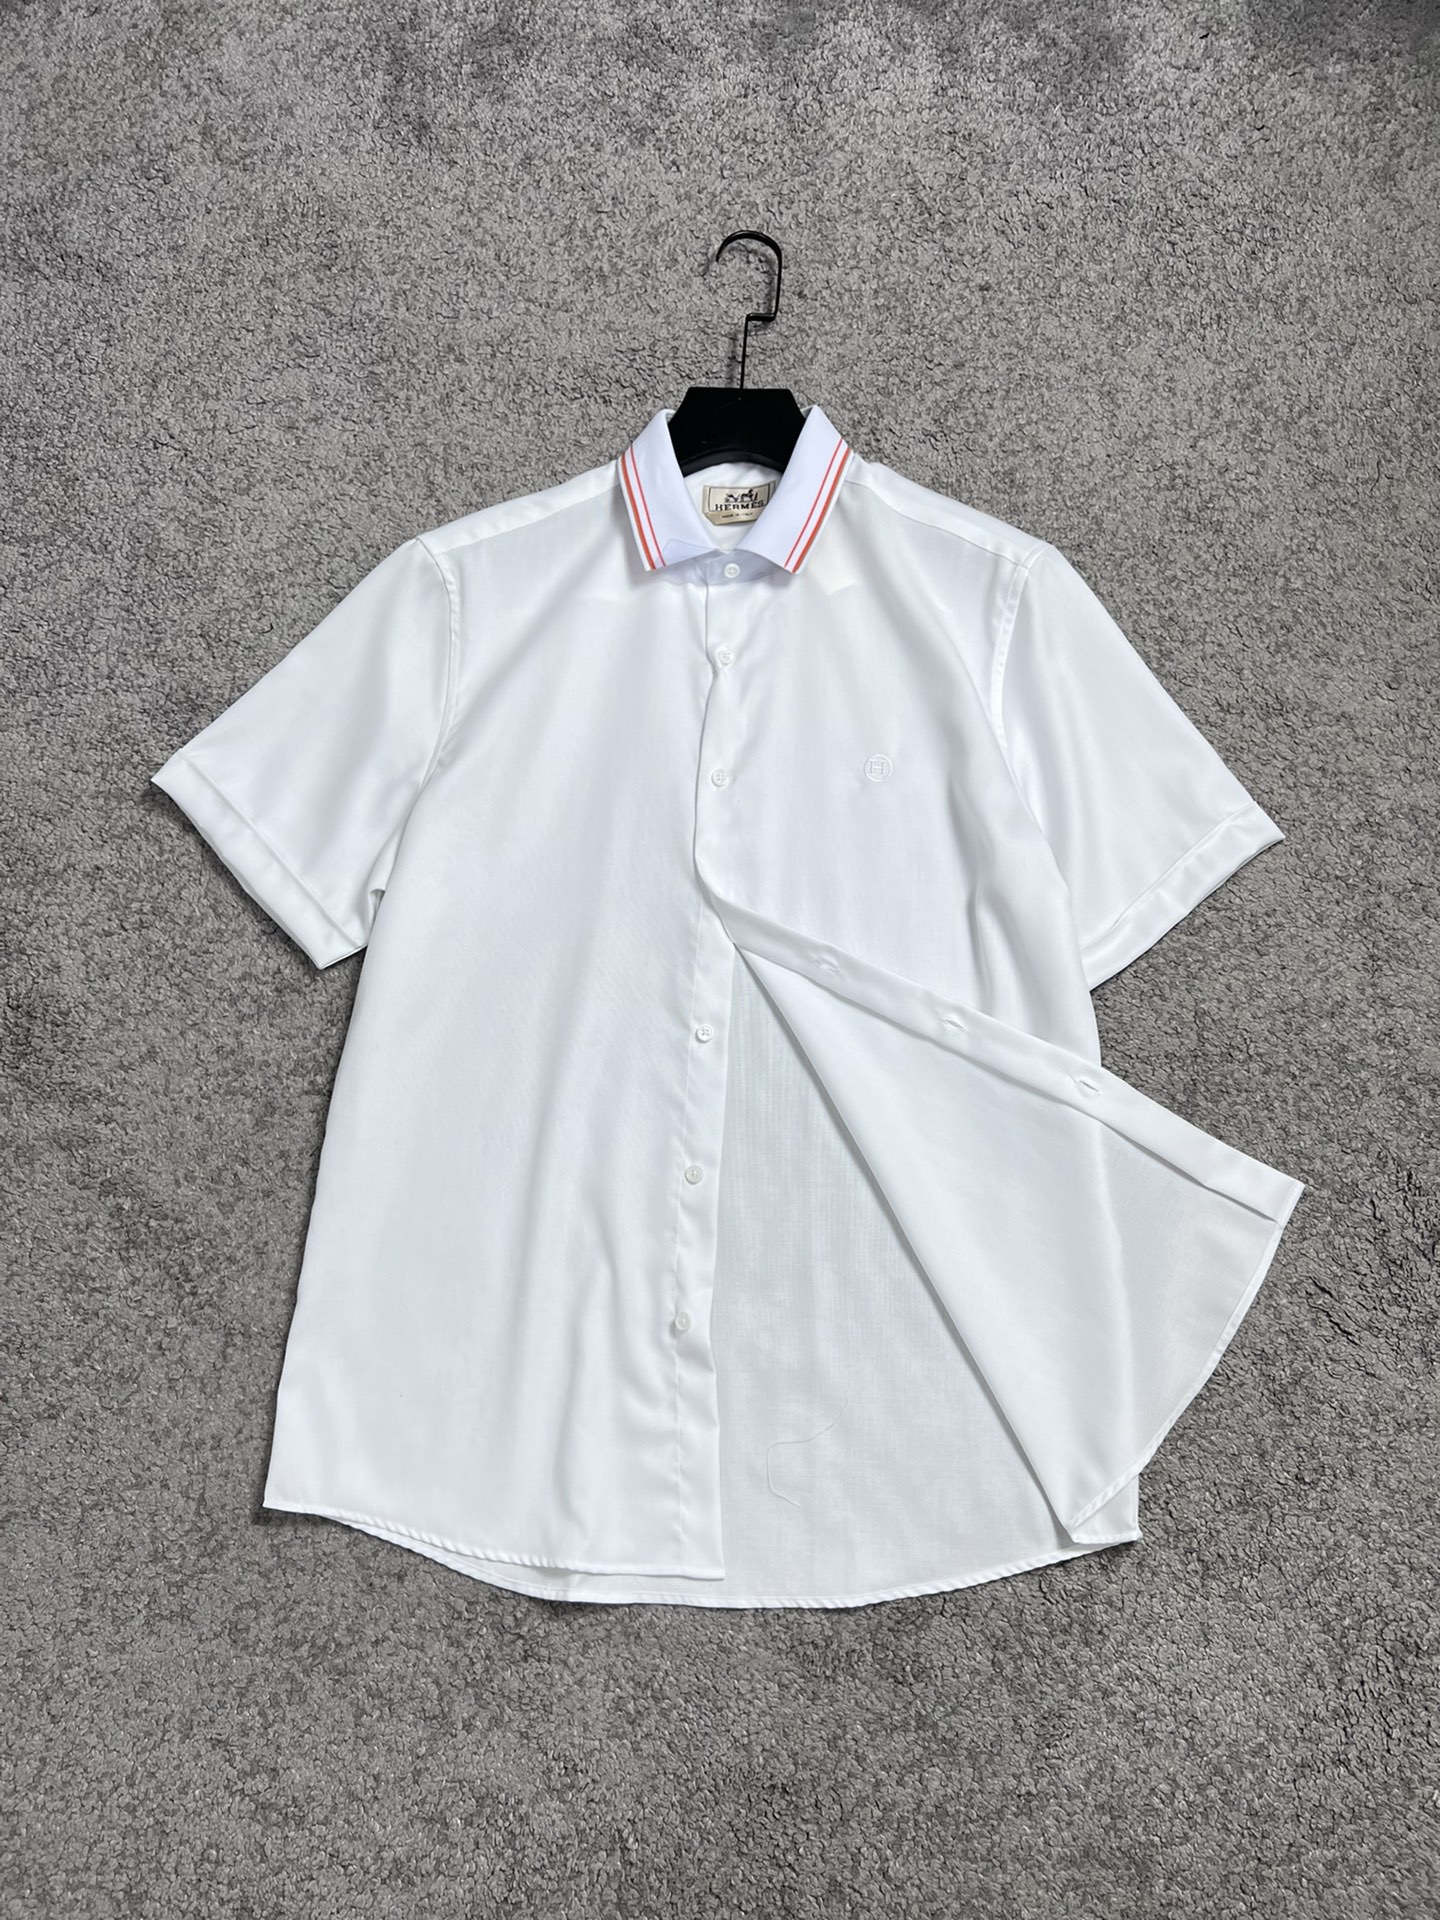 H家23SS春夏新款短袖衬衫针织条纹拼接领设计高端系列黑色白色S,M,L,XL,XXL